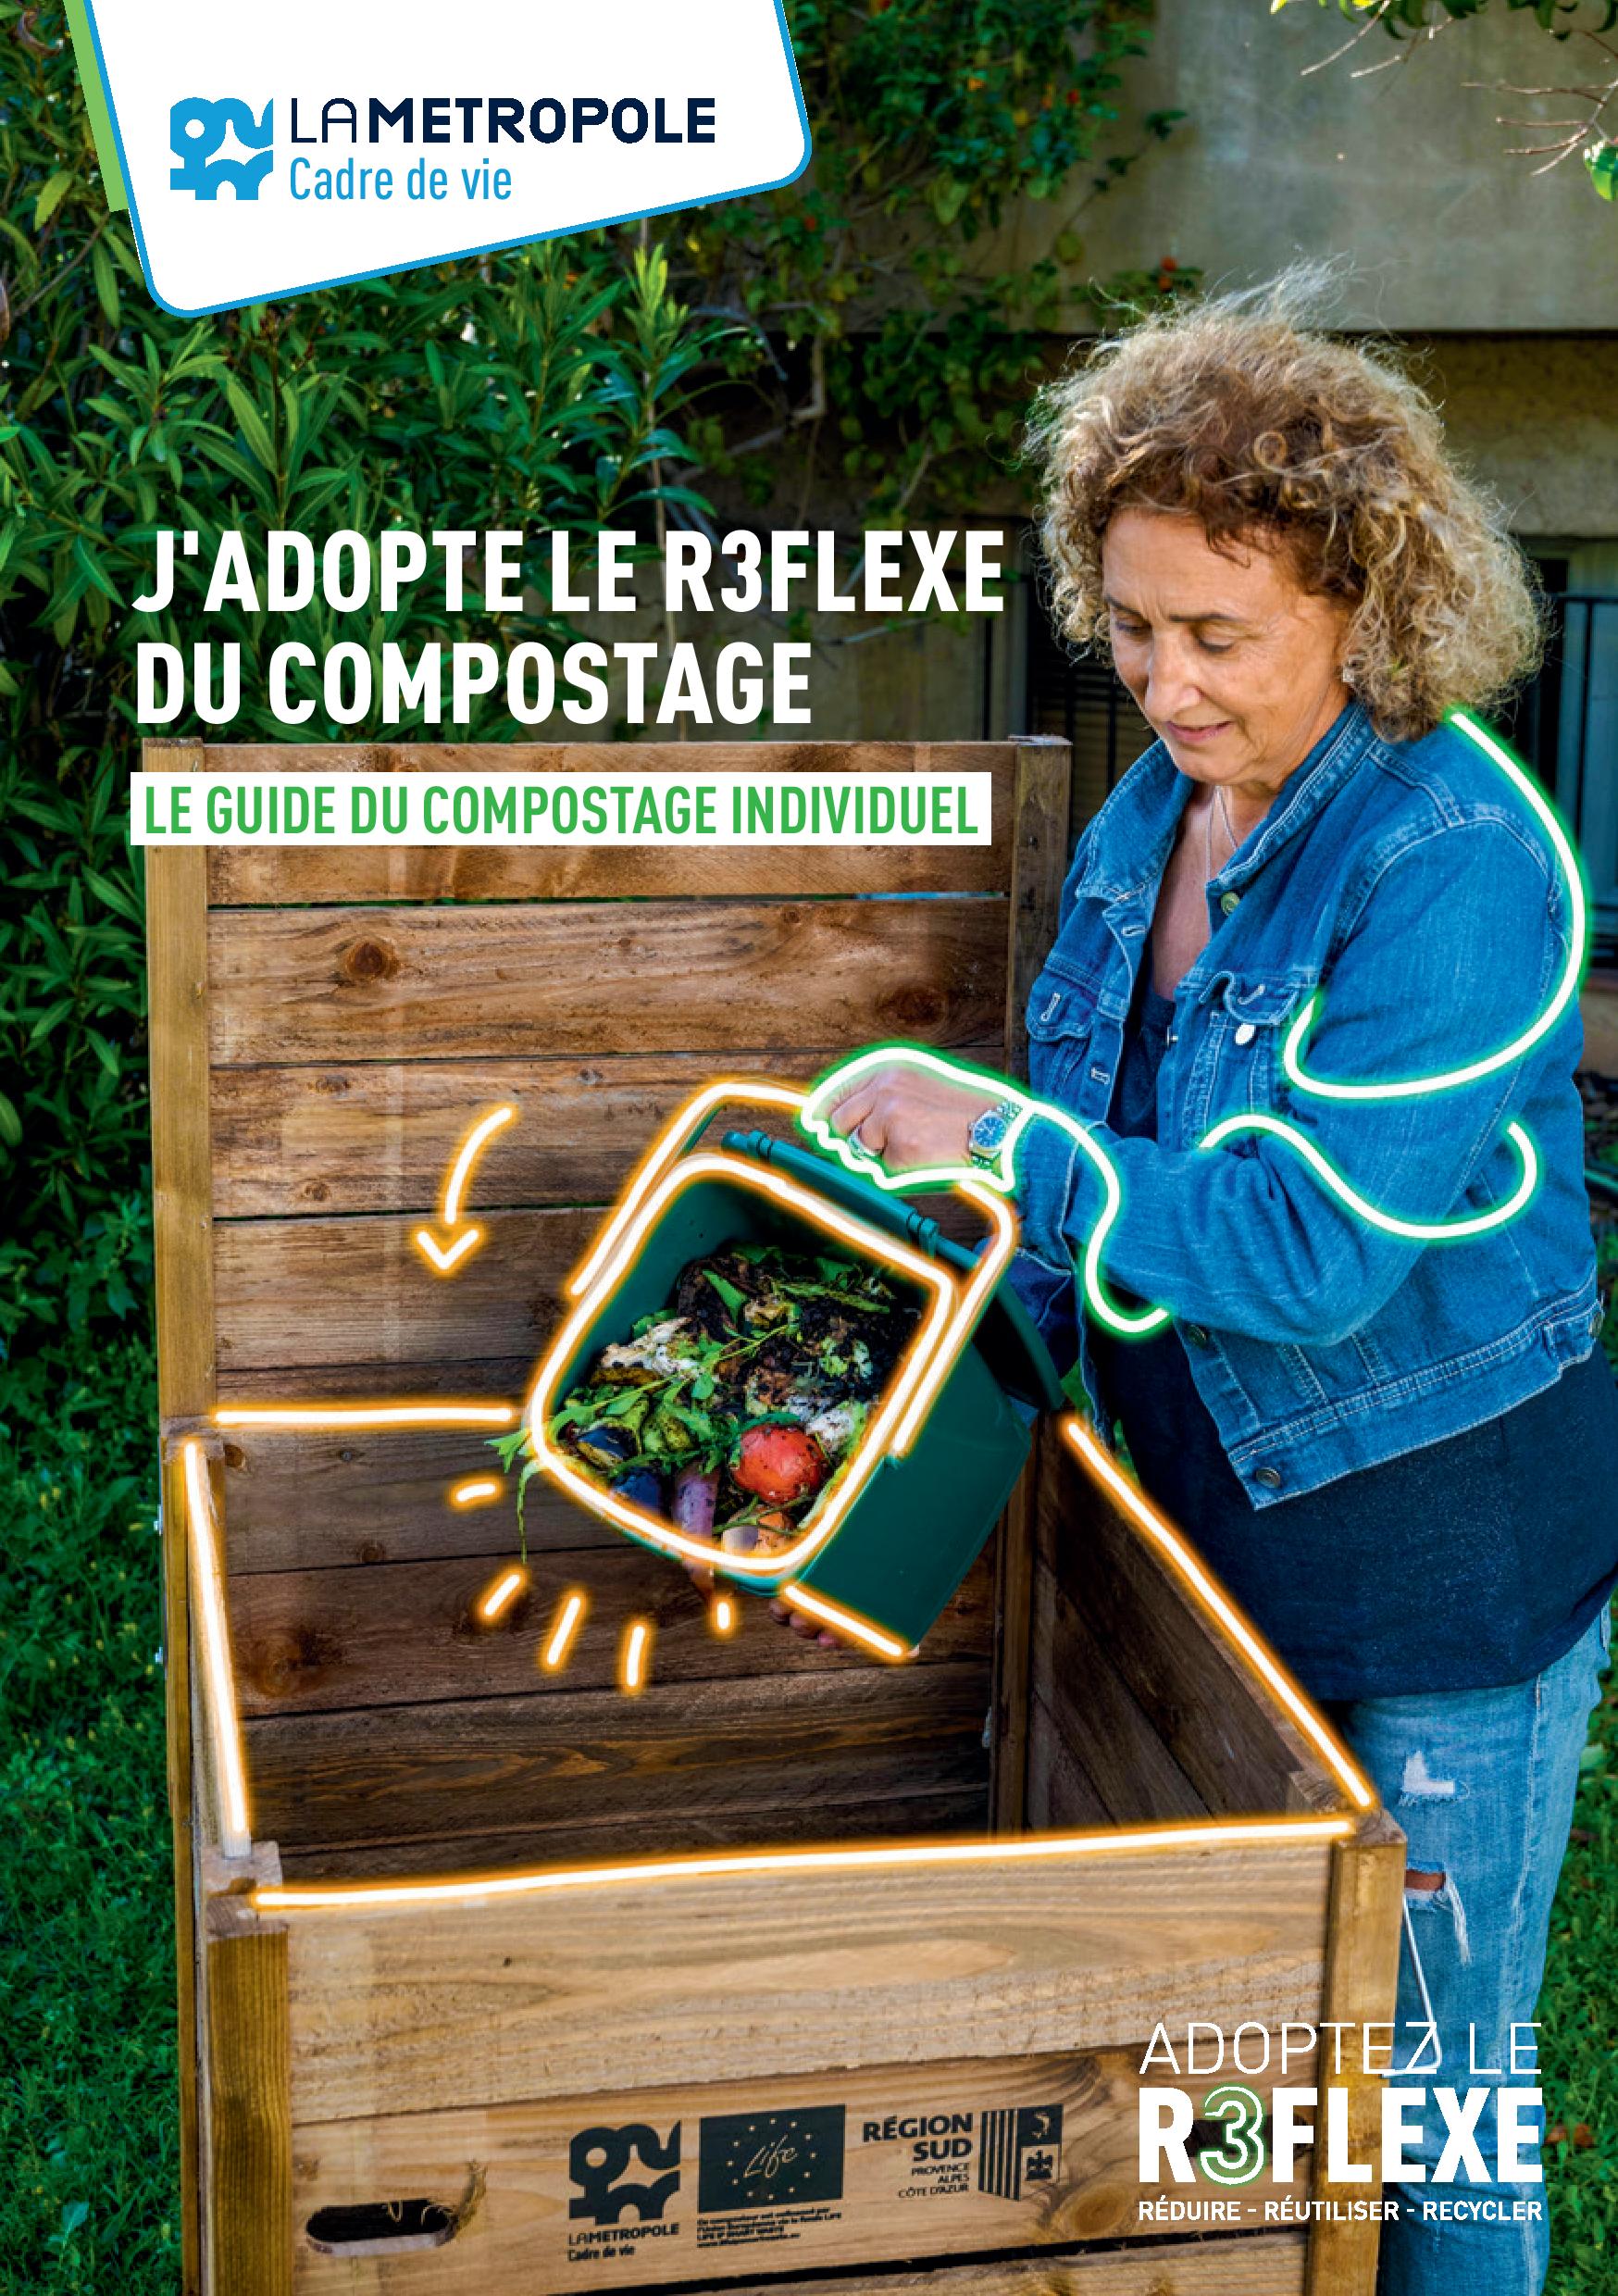 Nouvelle campagne d'attribution de composteurs - Ville de Velaux